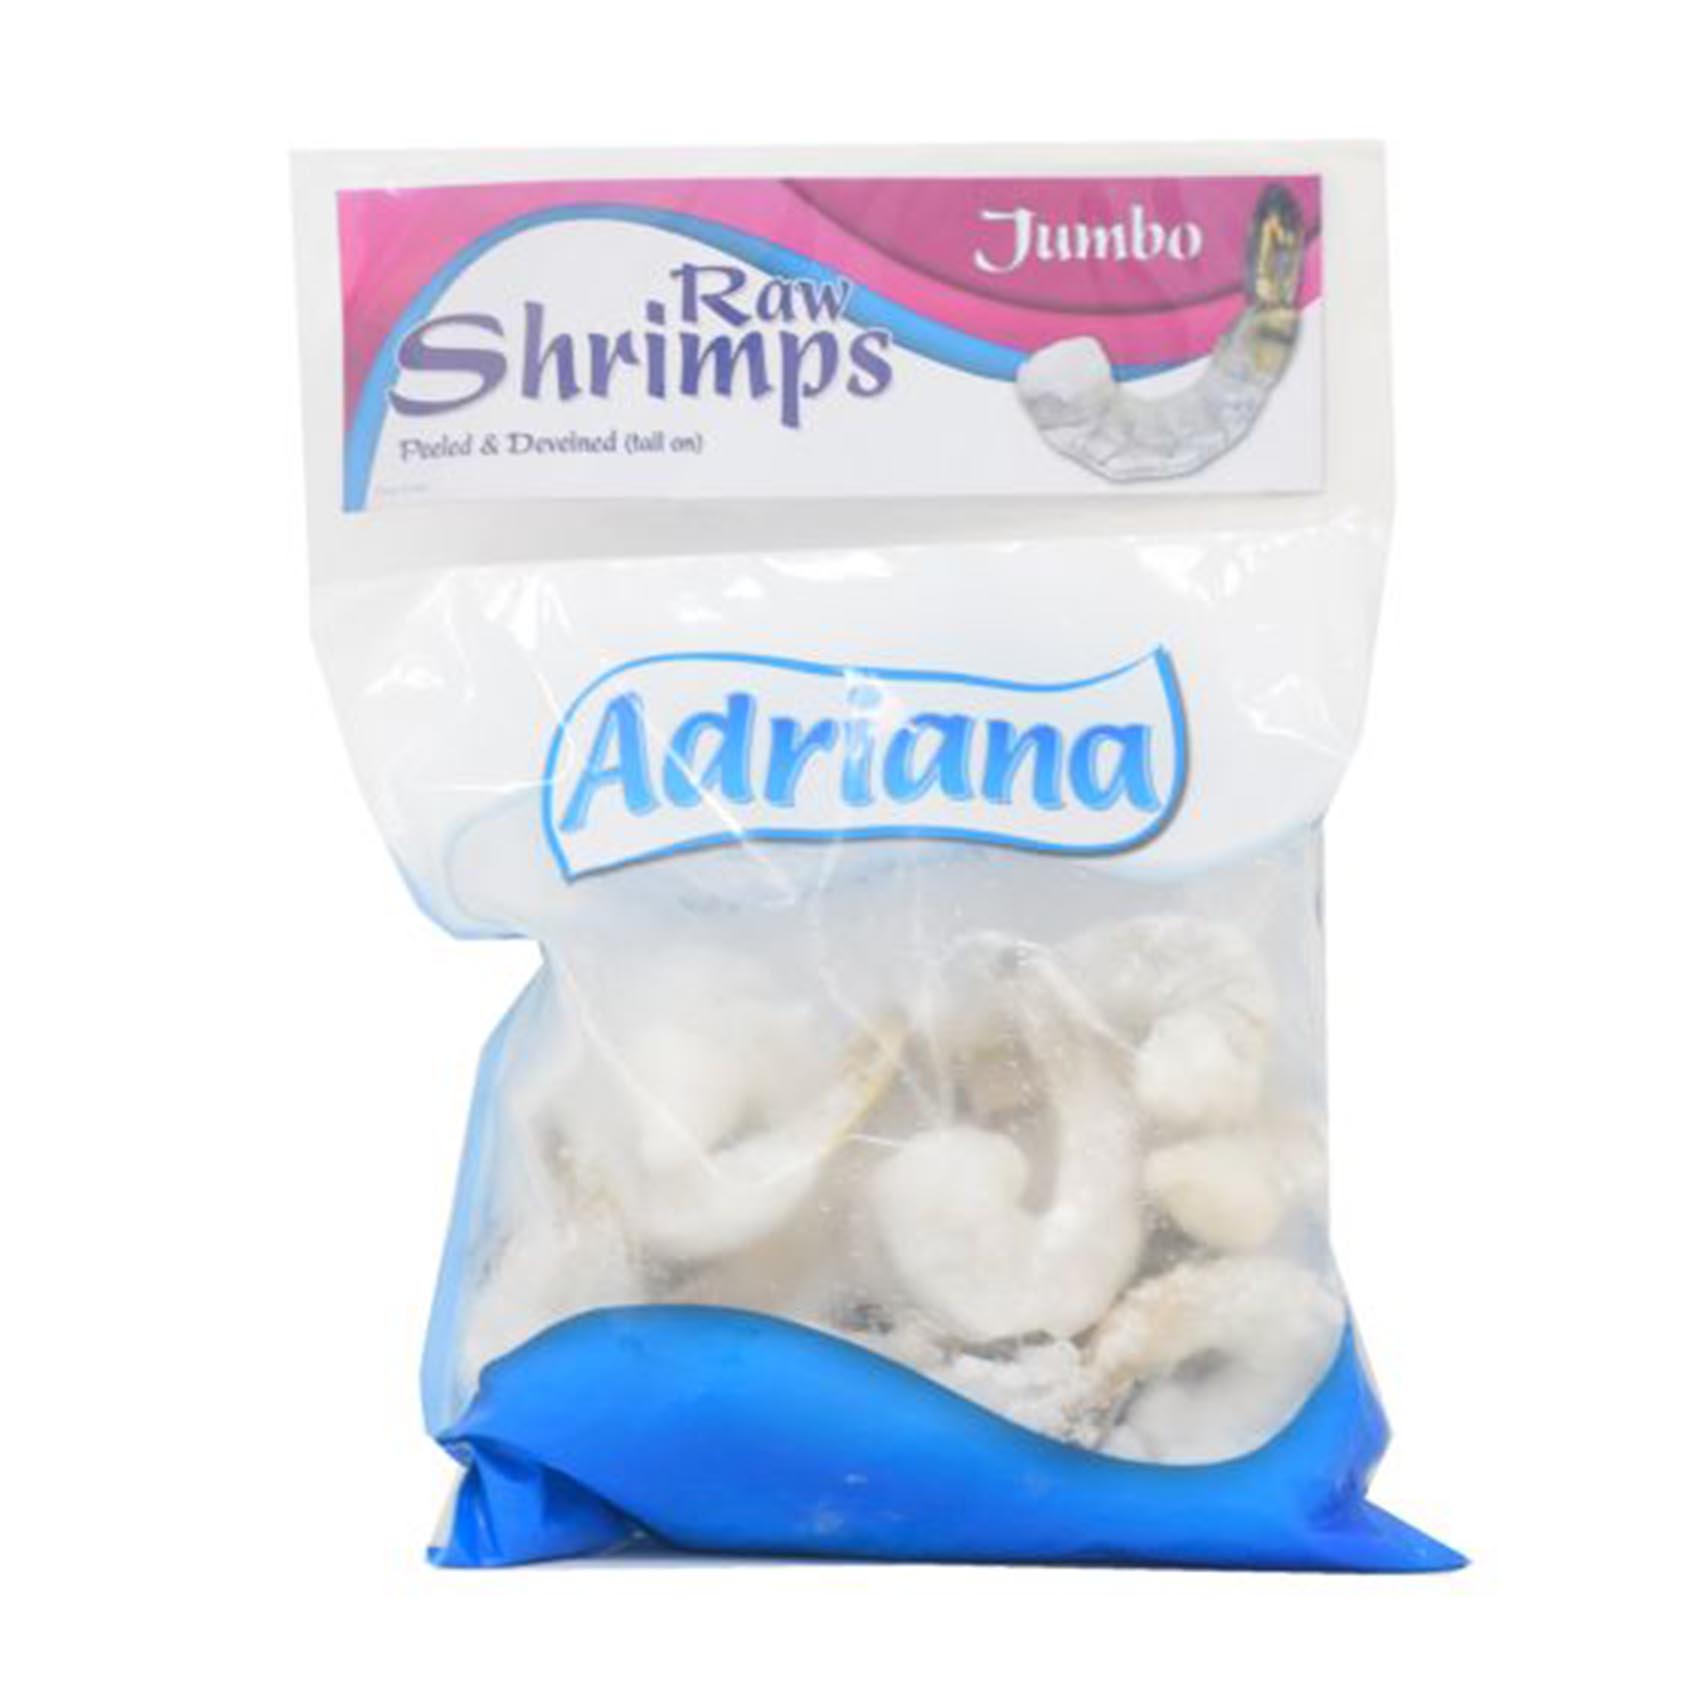 Adriana Raw Jumbo Shrimps 400g